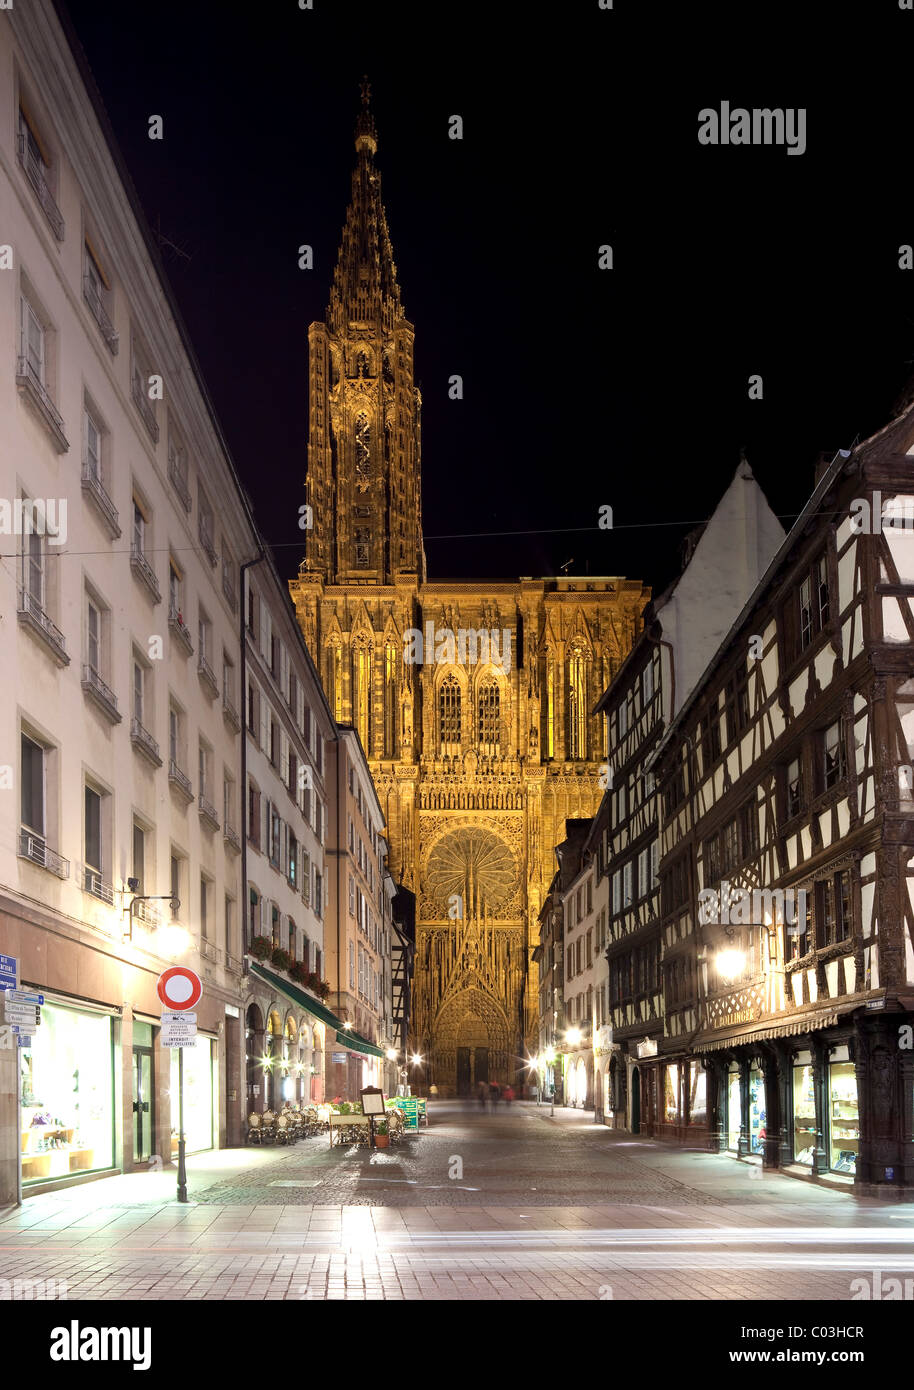 La cathédrale de Strasbourg, Strasbourg, Alsace, France, Europe Banque D'Images